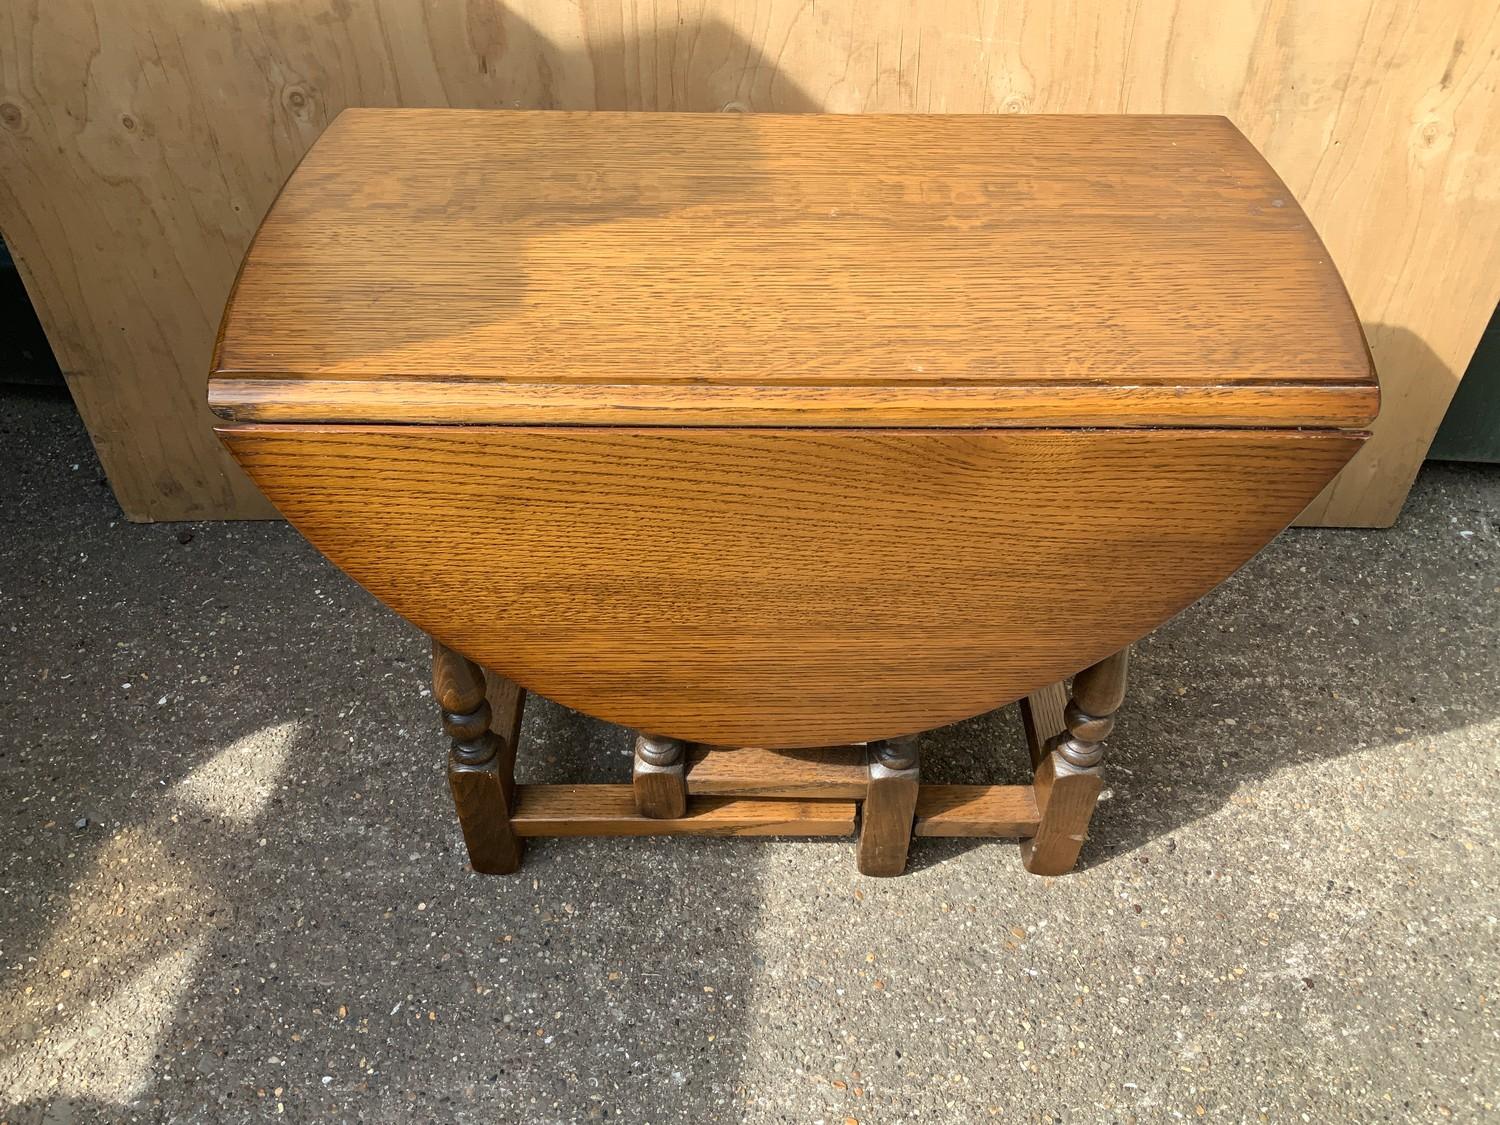 Small Oak Gate Leg Table - 48cm H